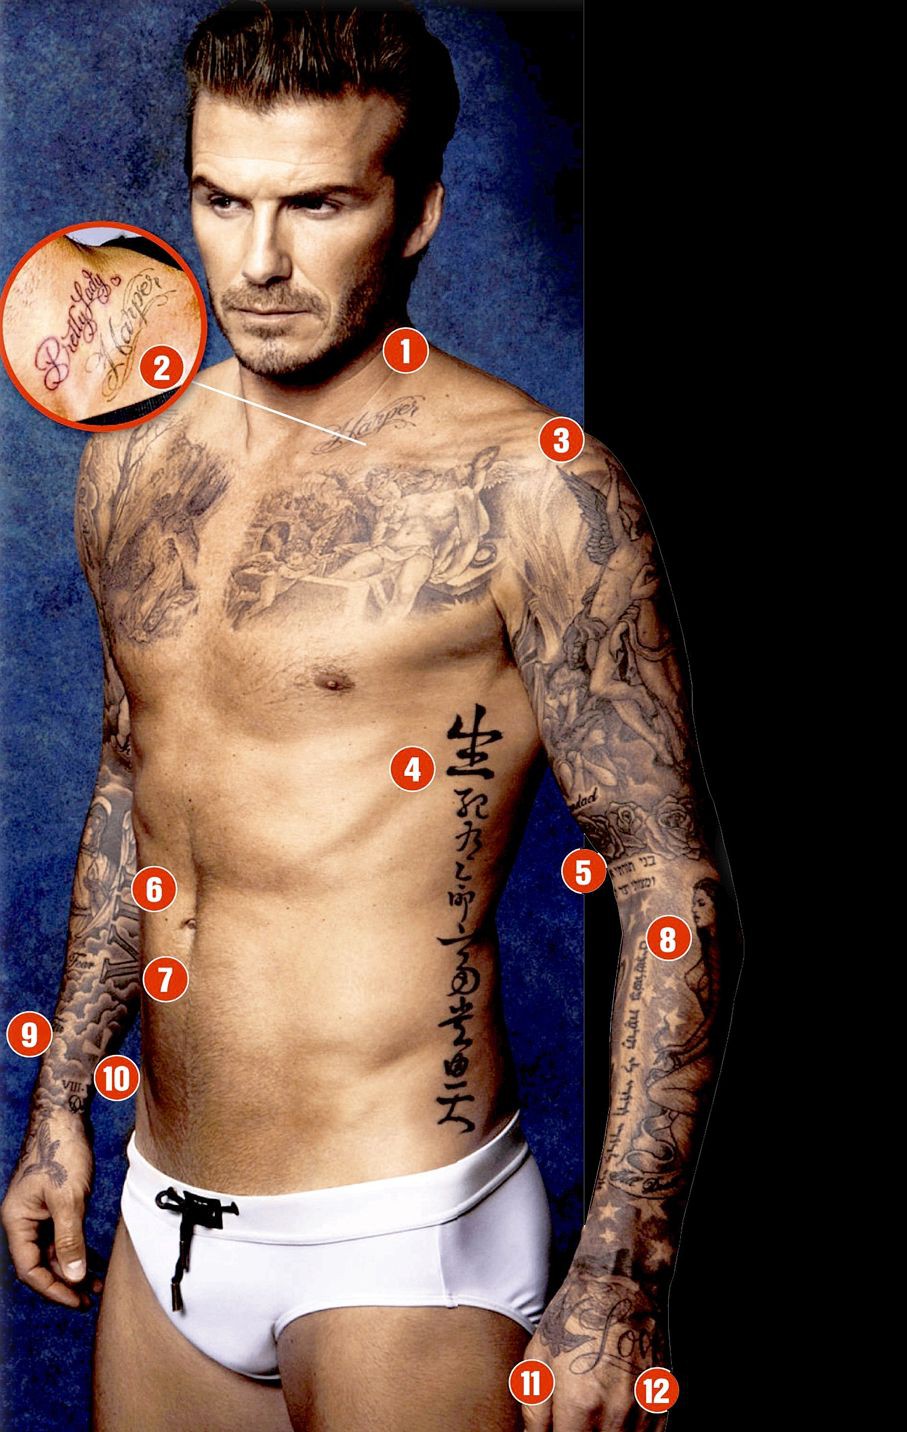 Dòng chữ Beckham luôn  MrTattoo  Xăm Nghệ Thuật Hà Nội  Facebook